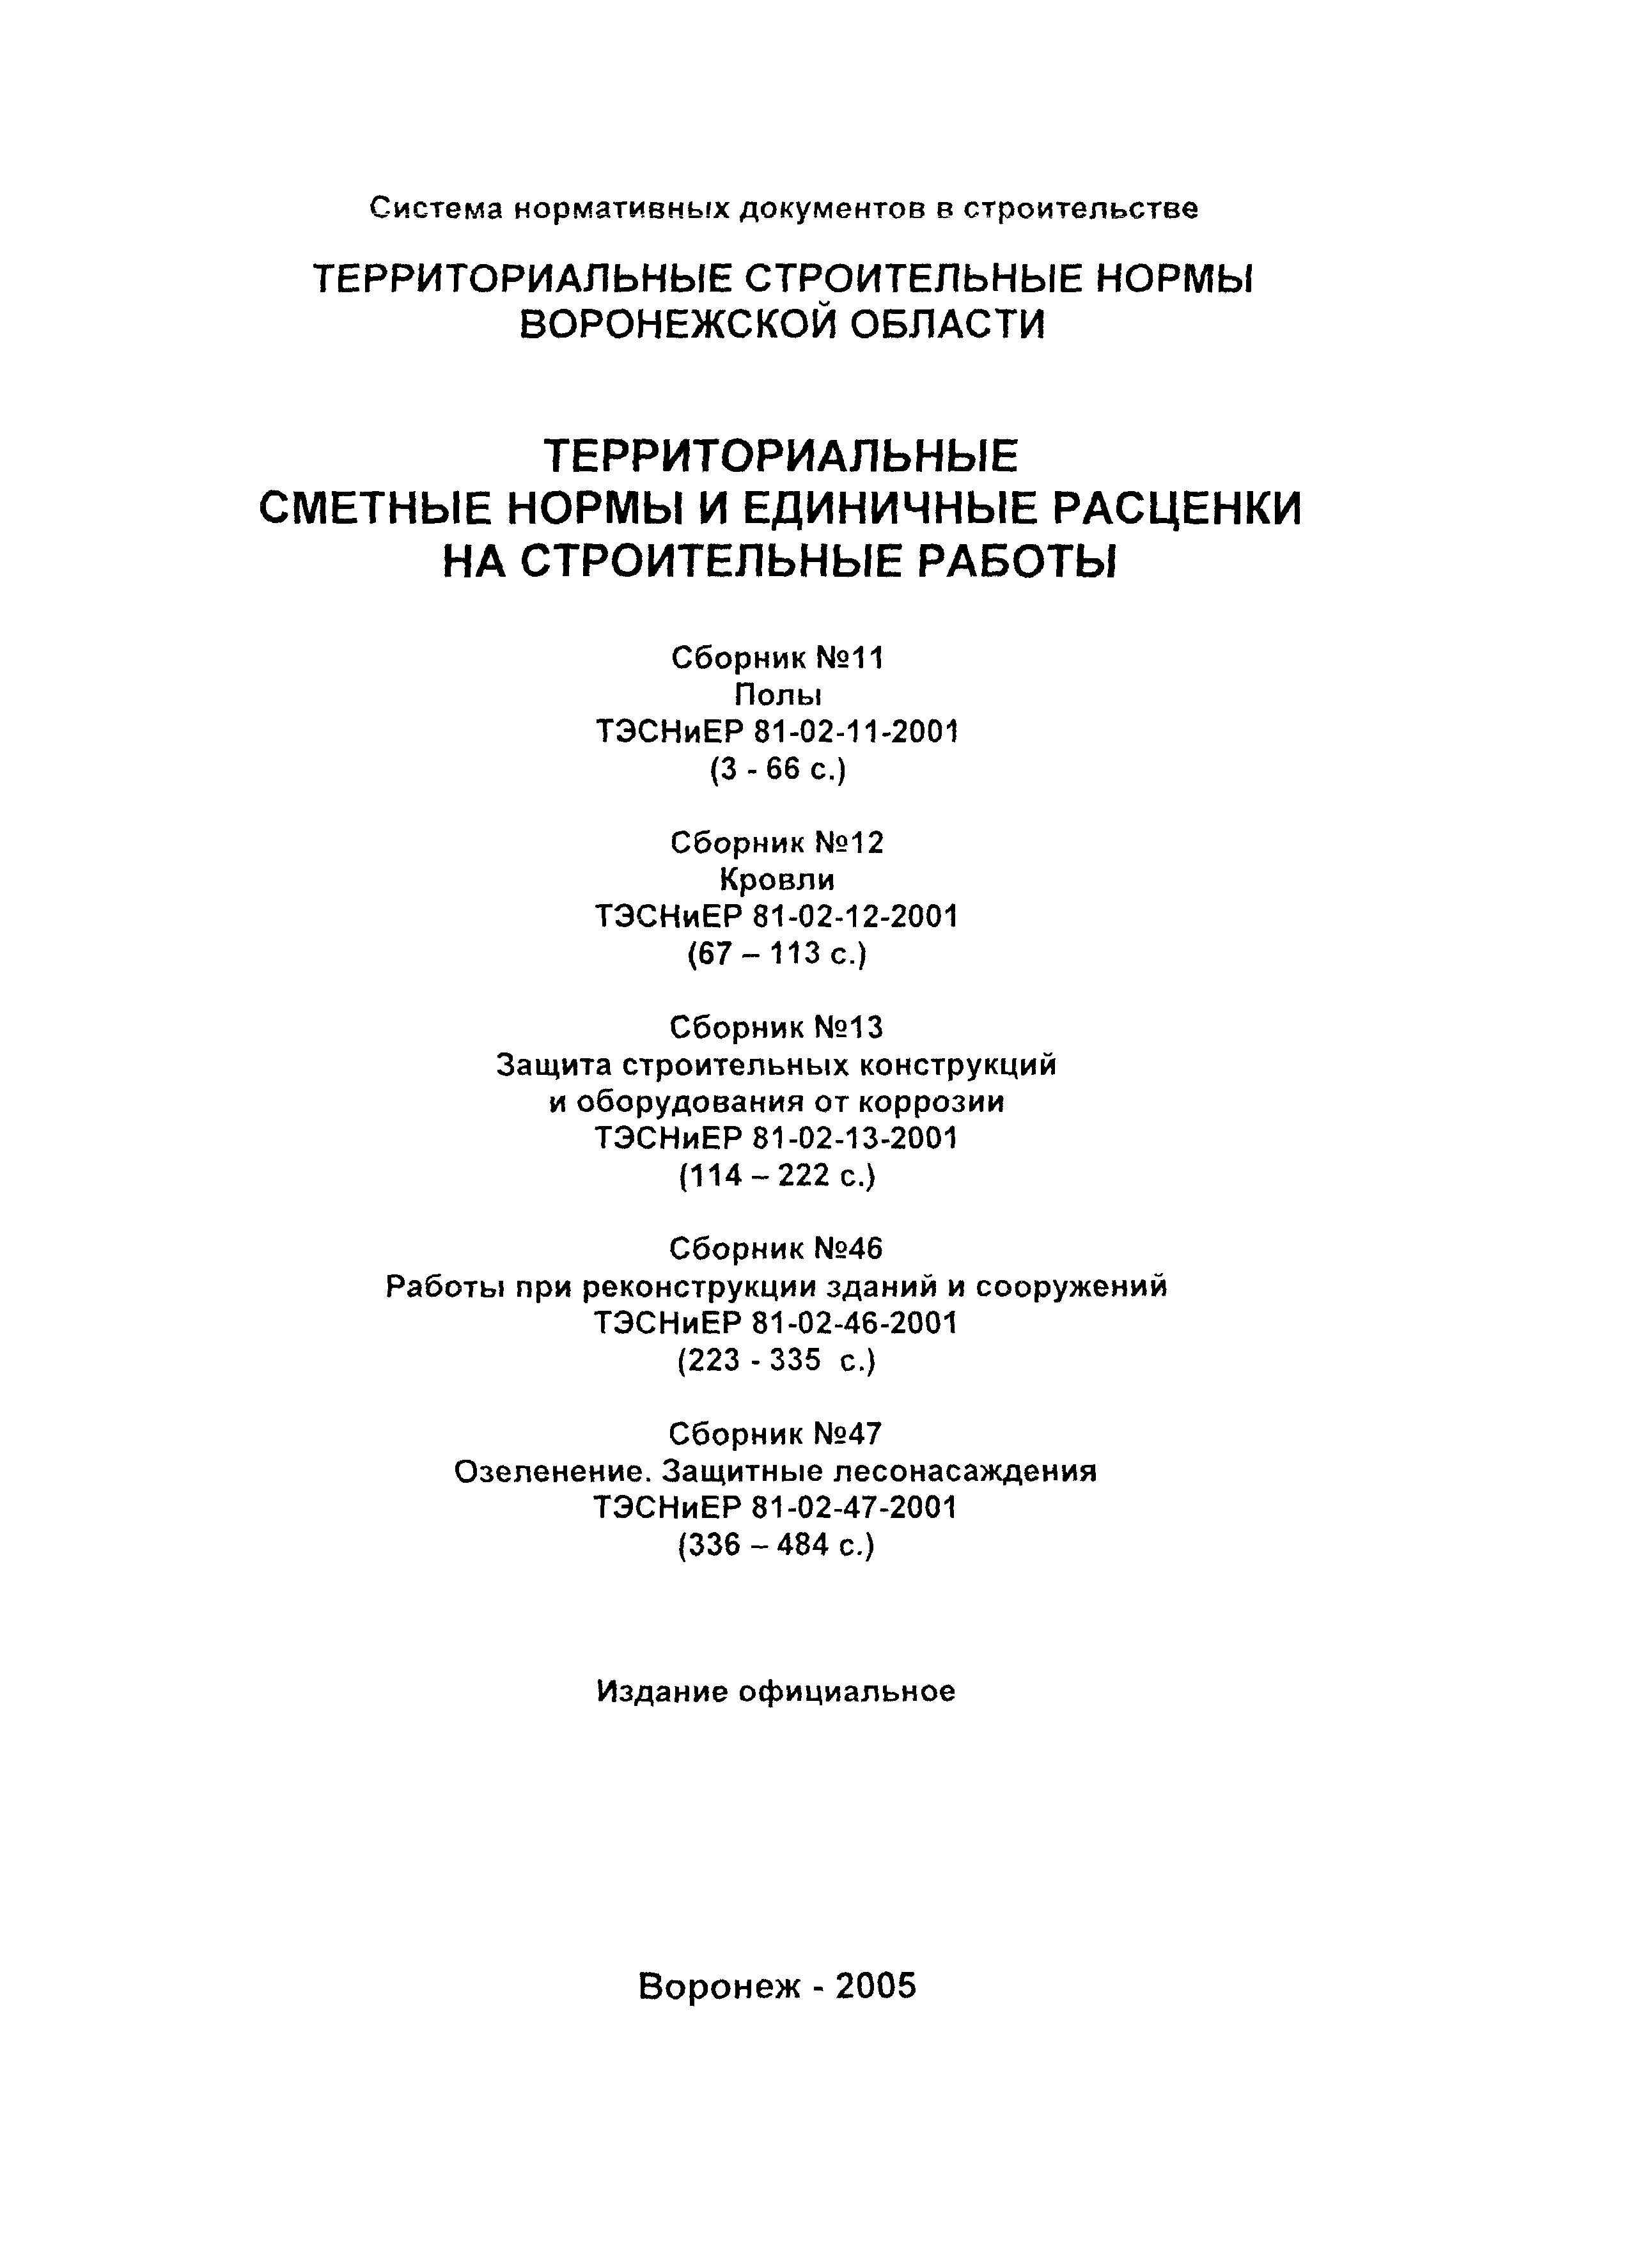 ТЭСНиЕР Воронежской области 81-02-47-2001